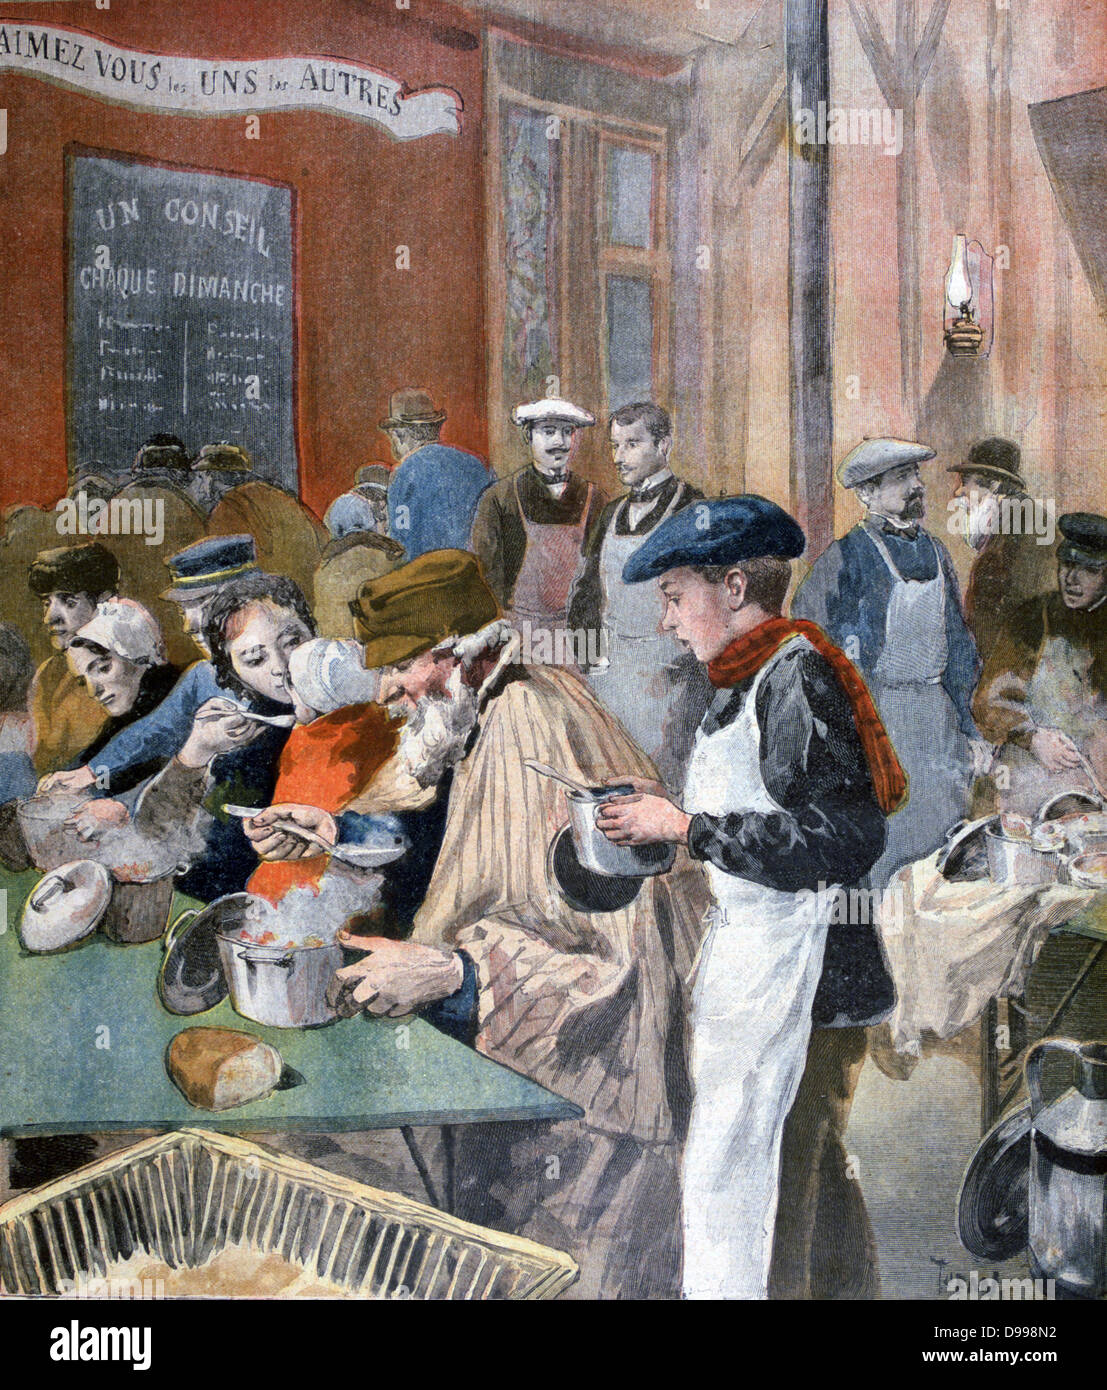 Les étudiants qui donnent de leur temps pour agir comme serveurs dans une soupe populaire de Paris. À partir de 'Le Petit Journal', Paris, 5 février 1894. La France, de la charité, de l'alimentation, la pauvreté, la faim Banque D'Images